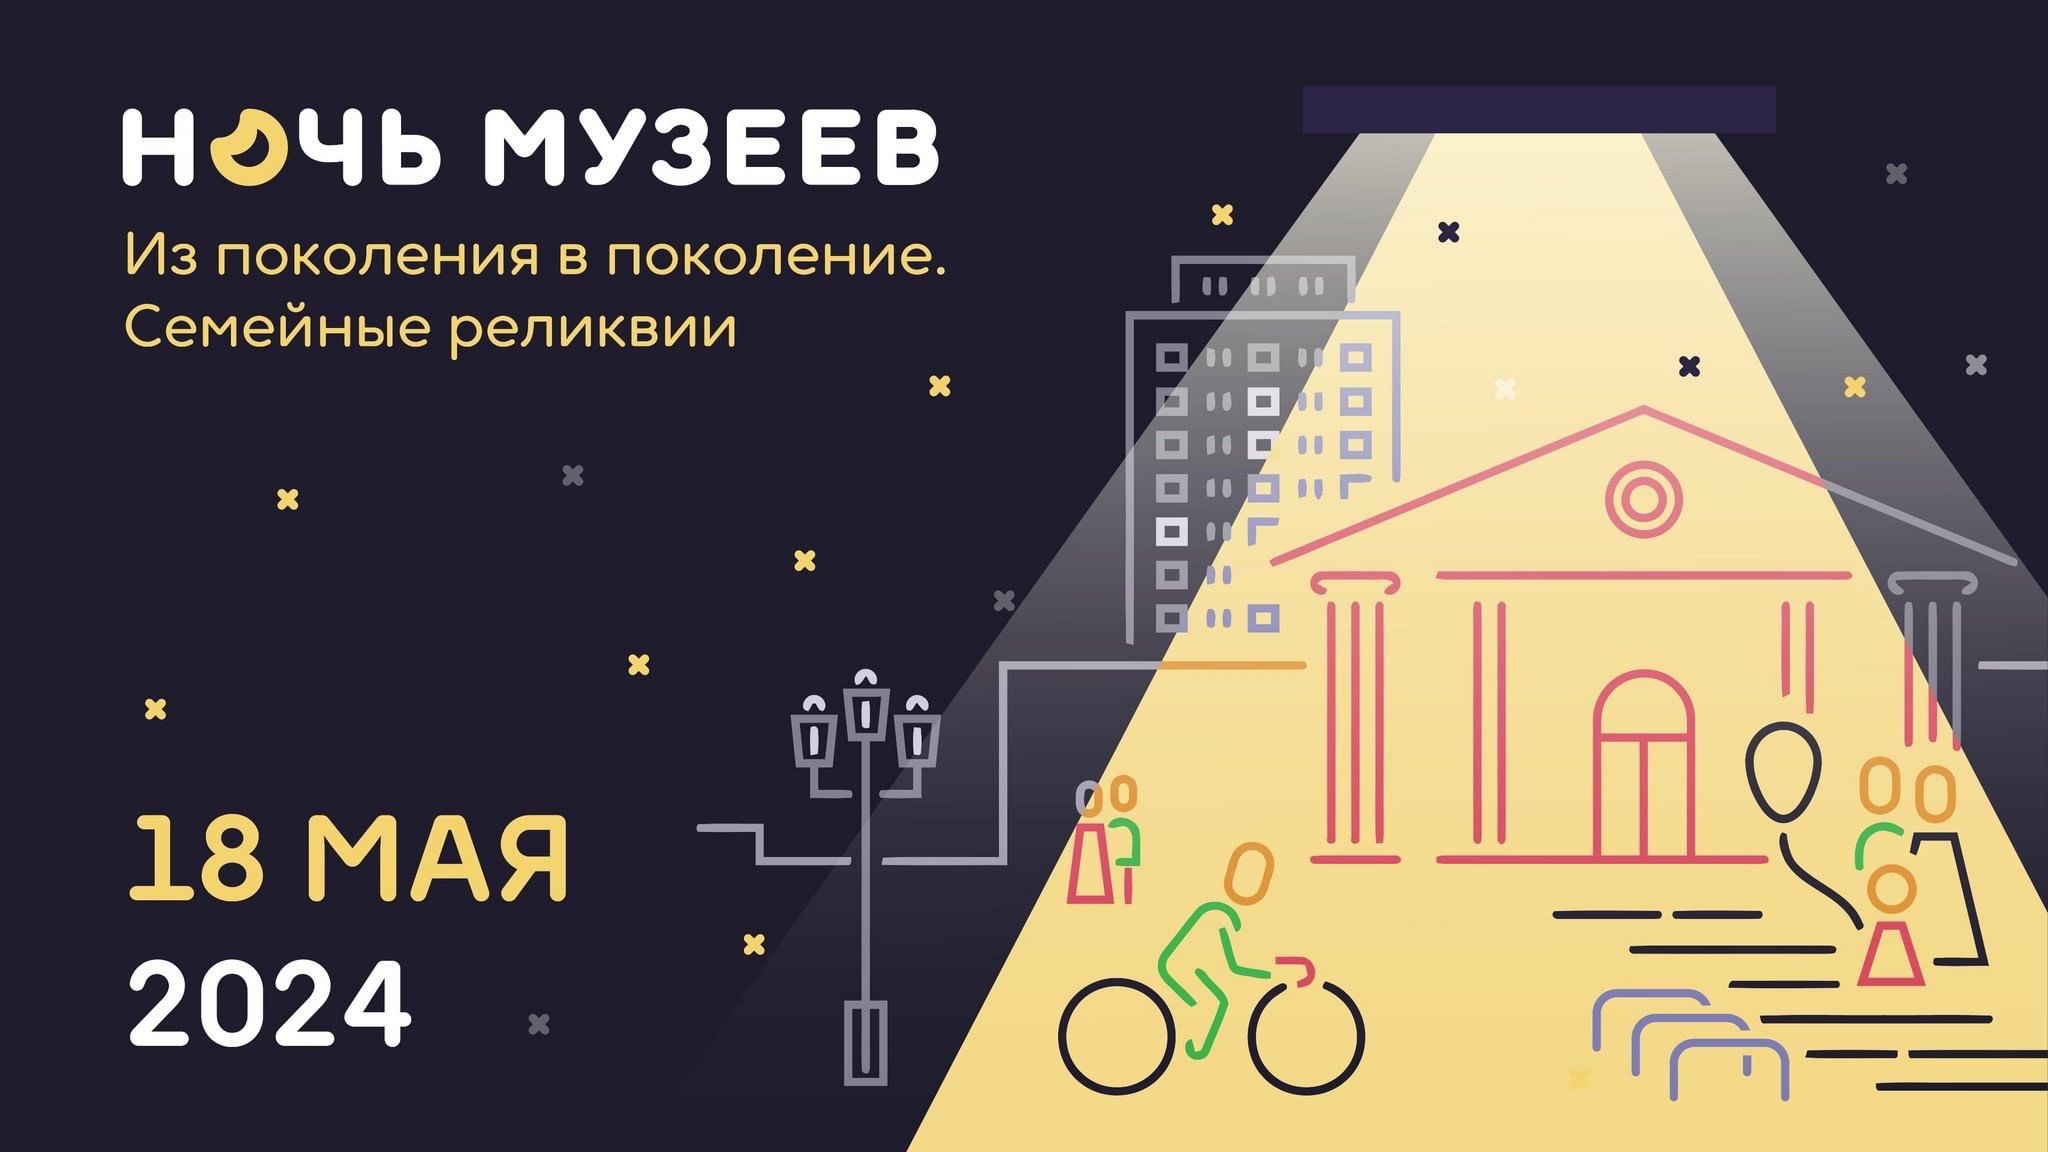 В Абакане пройдет Всероссийская акция Ночь музеев - 2024